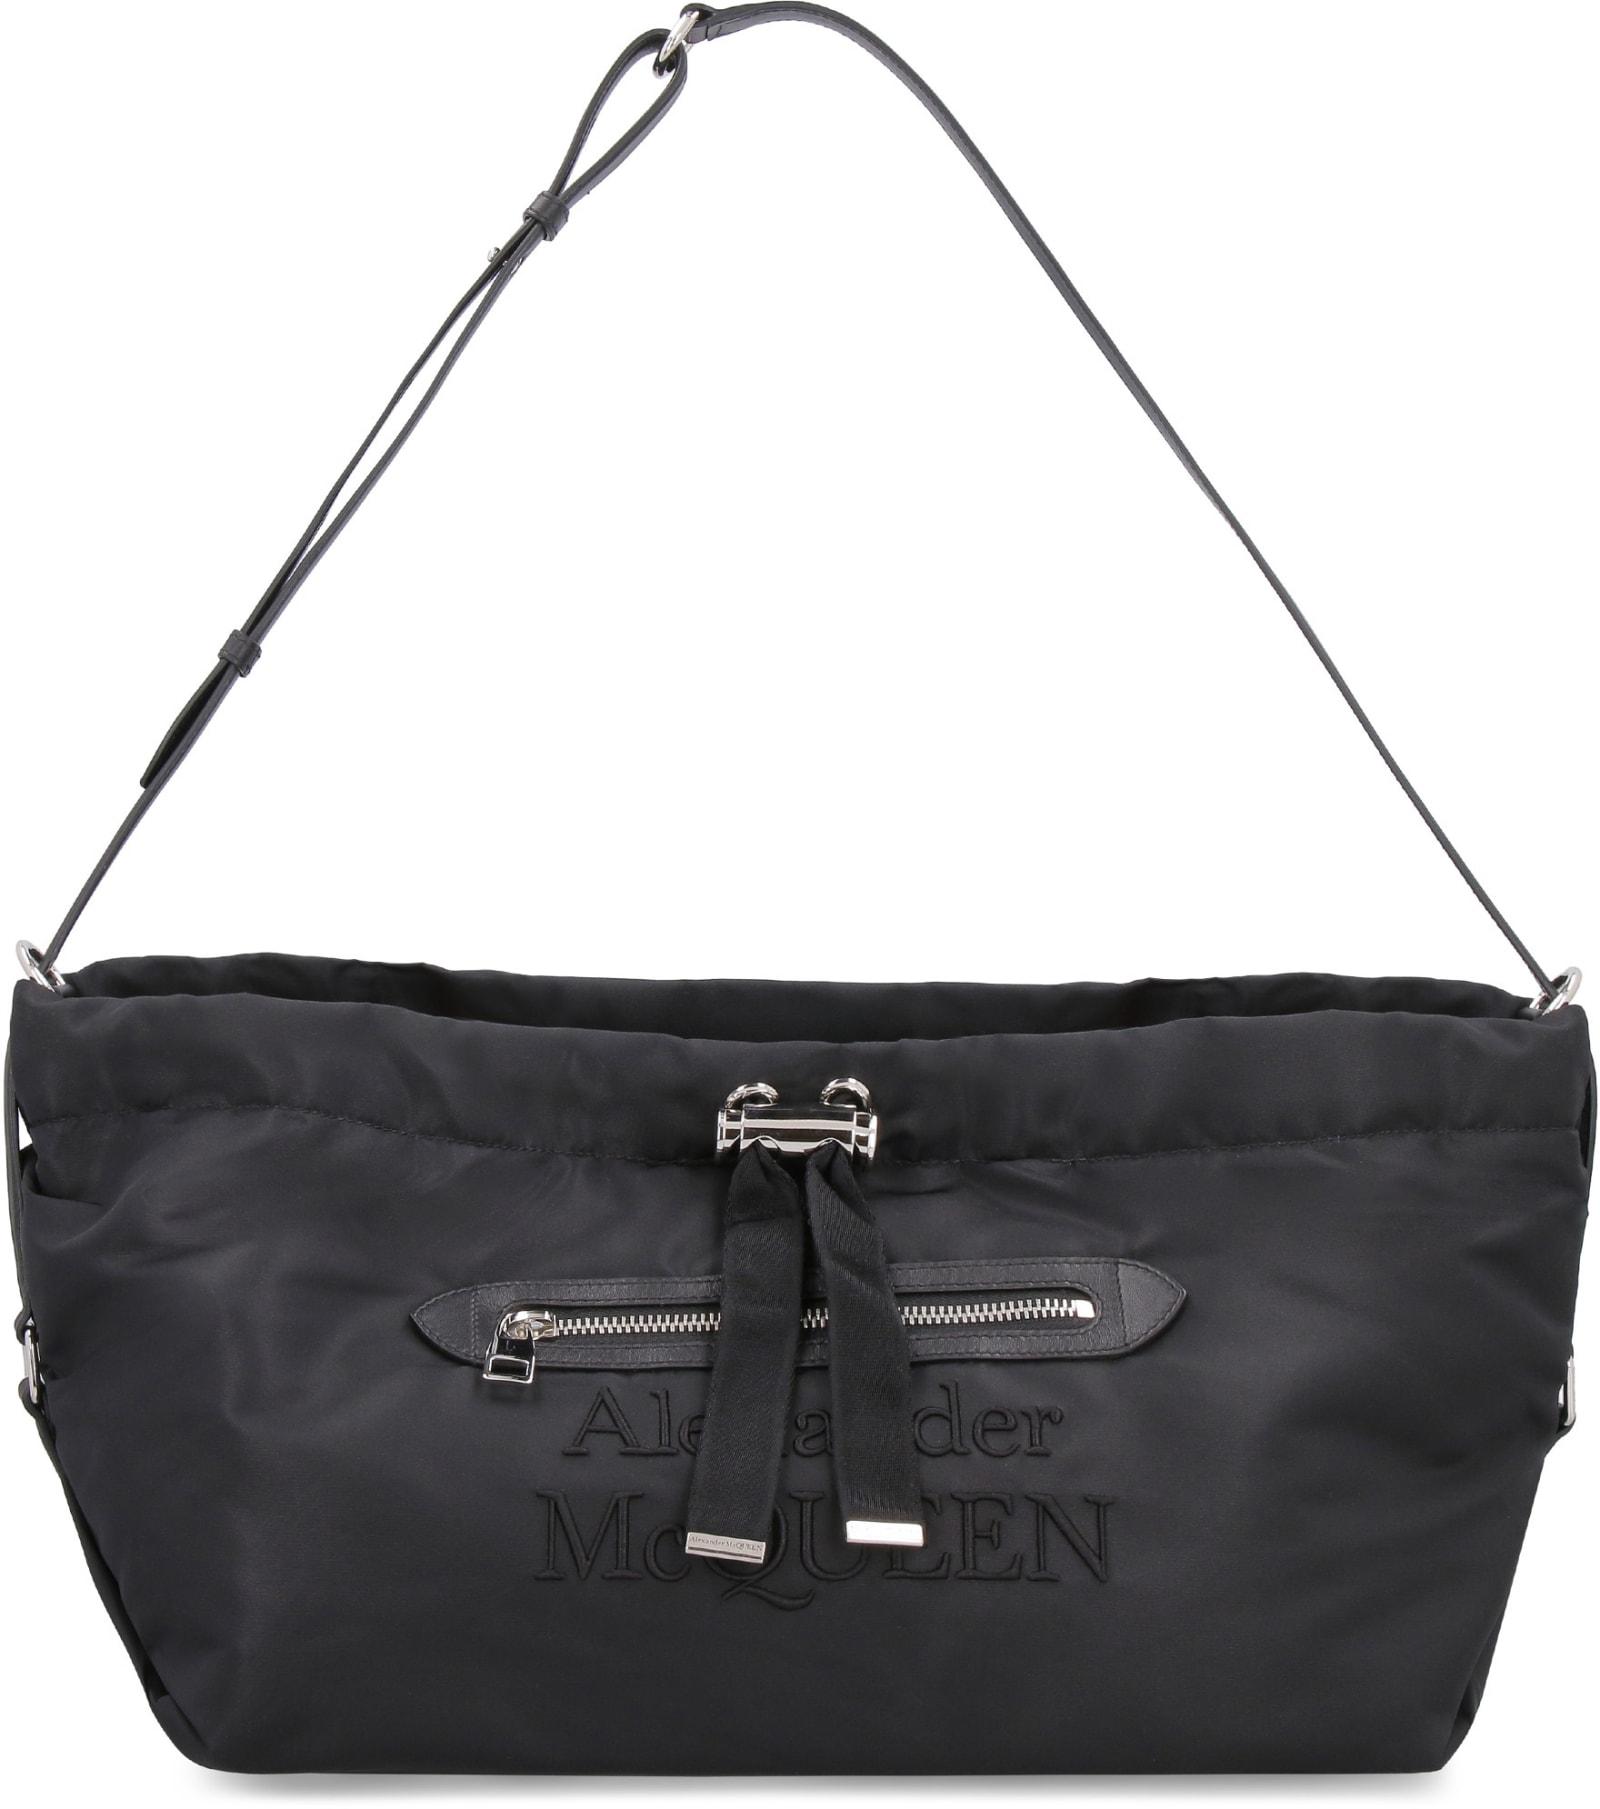 Womens Shoulder bags Alexander McQueen Shoulder bags Alexander McQueen Synthetic the Bundle Shoulder Bag in Black 